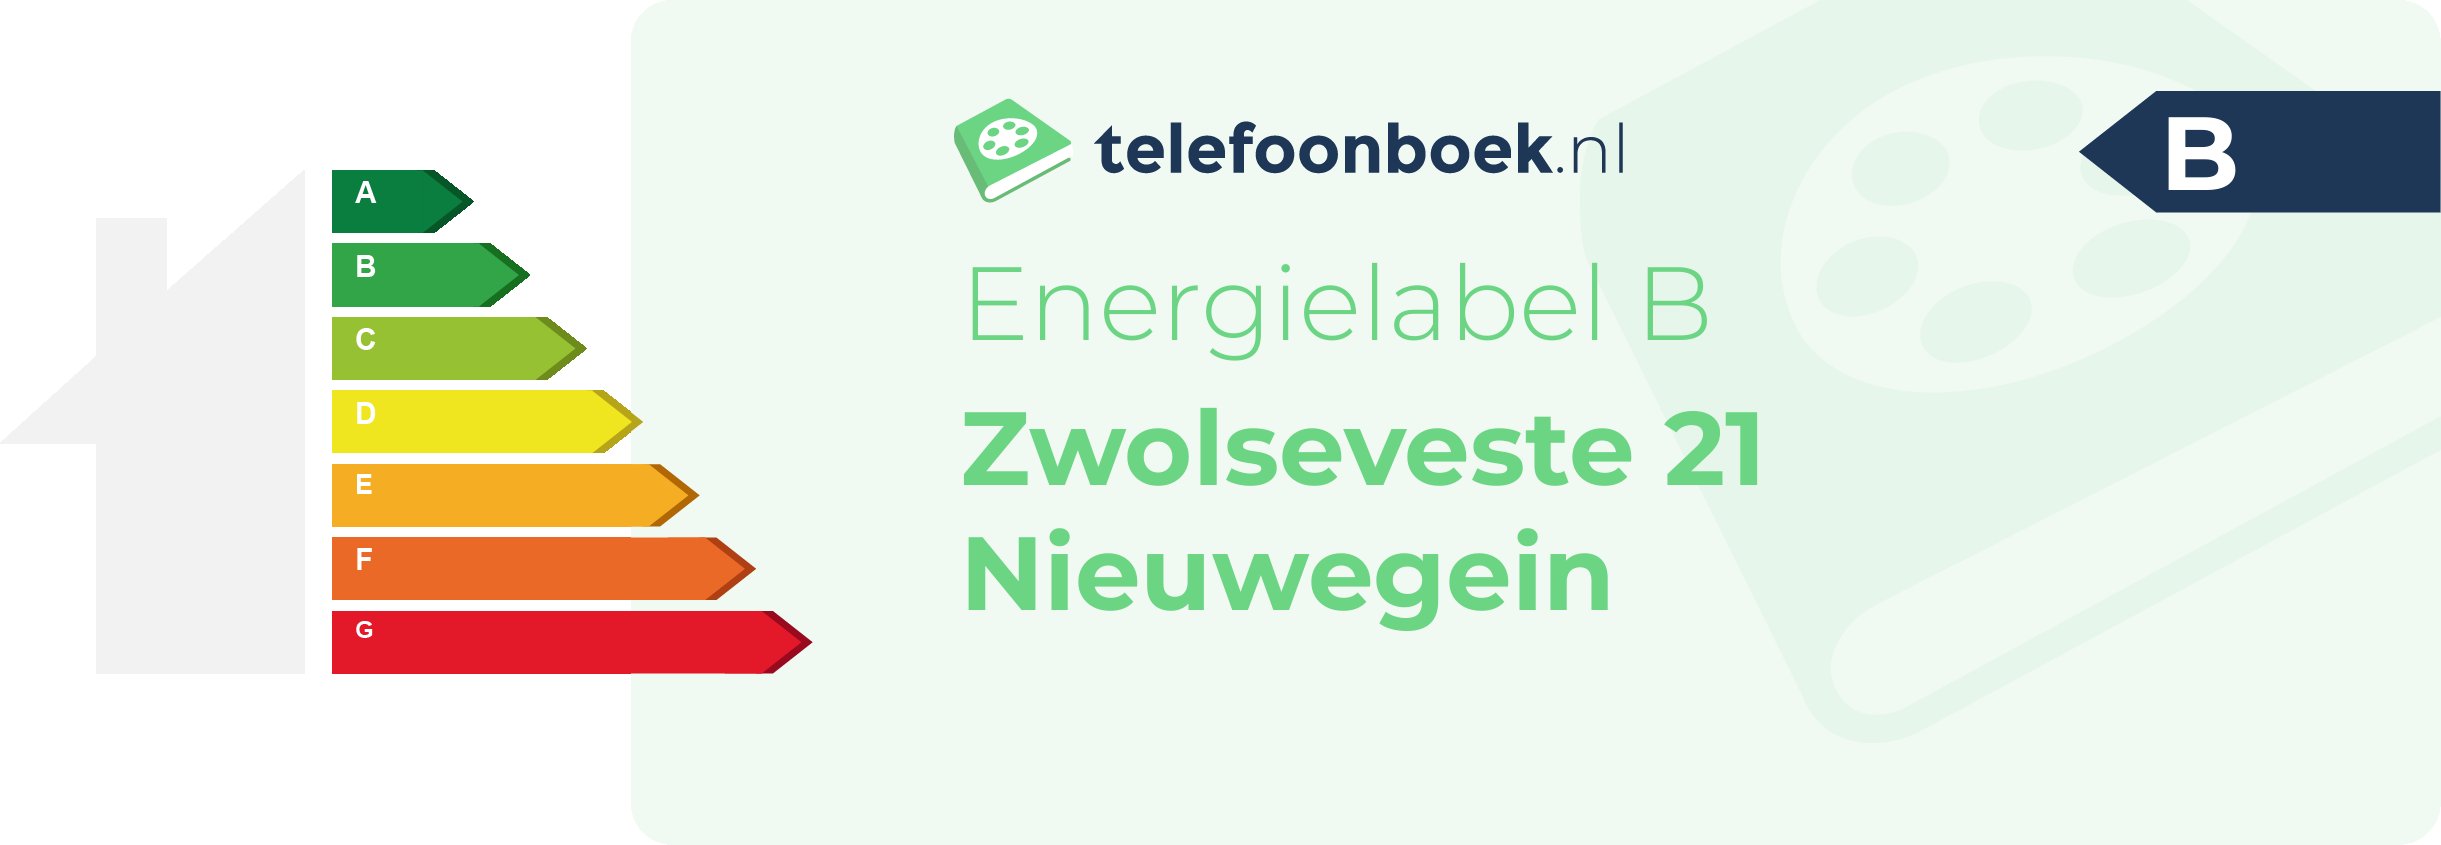 Energielabel Zwolseveste 21 Nieuwegein